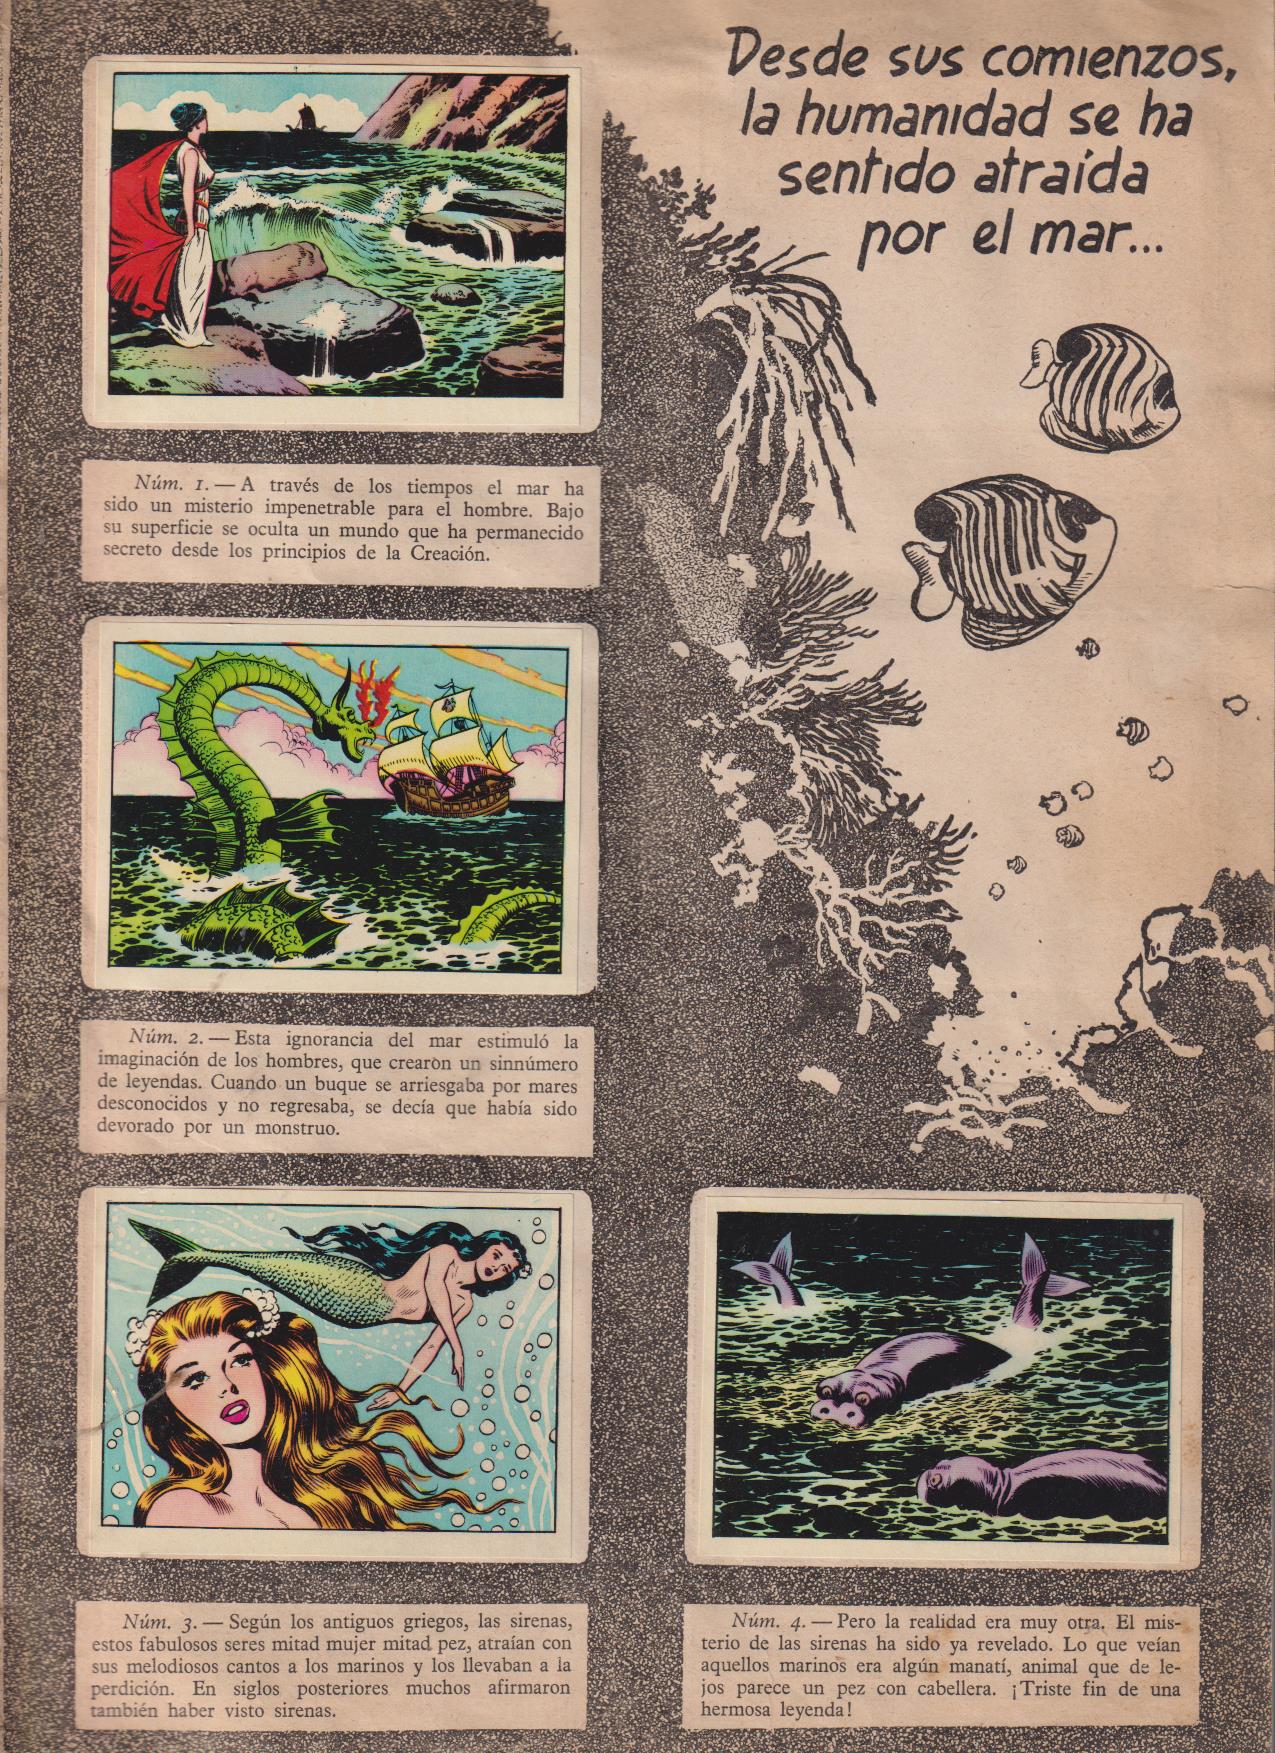 Los Misterios del Mar. Toray 1957. Dibujos de Boixcar. Álbum a falta de 3 cromos de 128